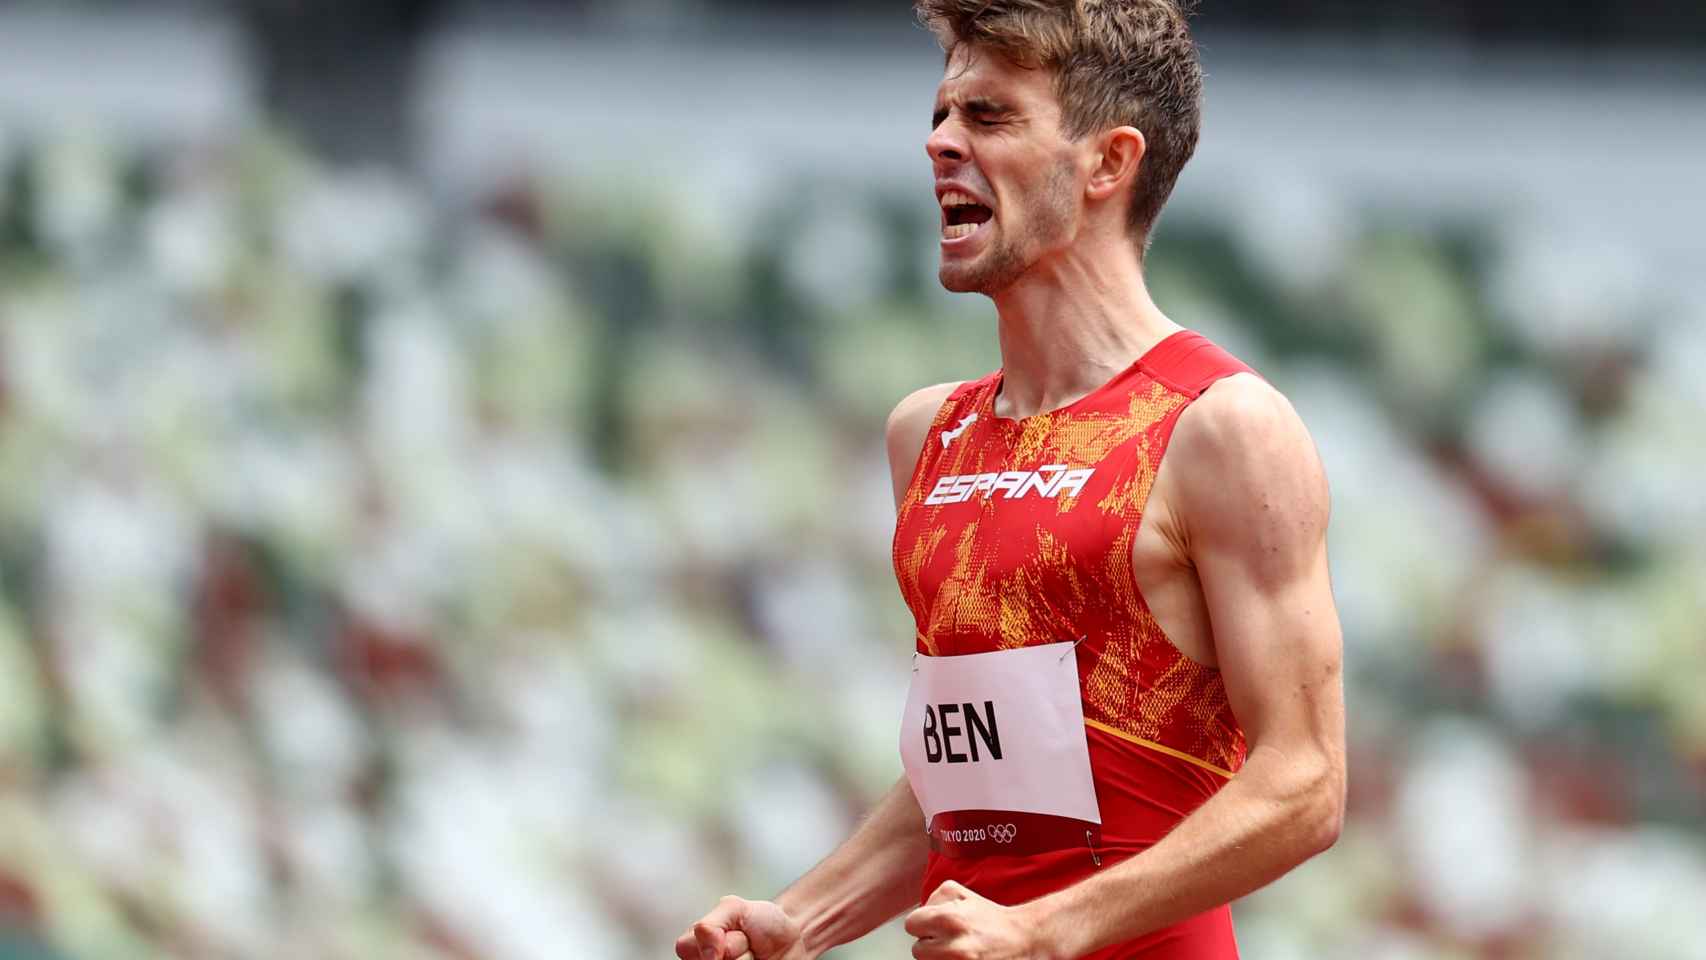 Adrián Ben, en los Juegos Olímpicos